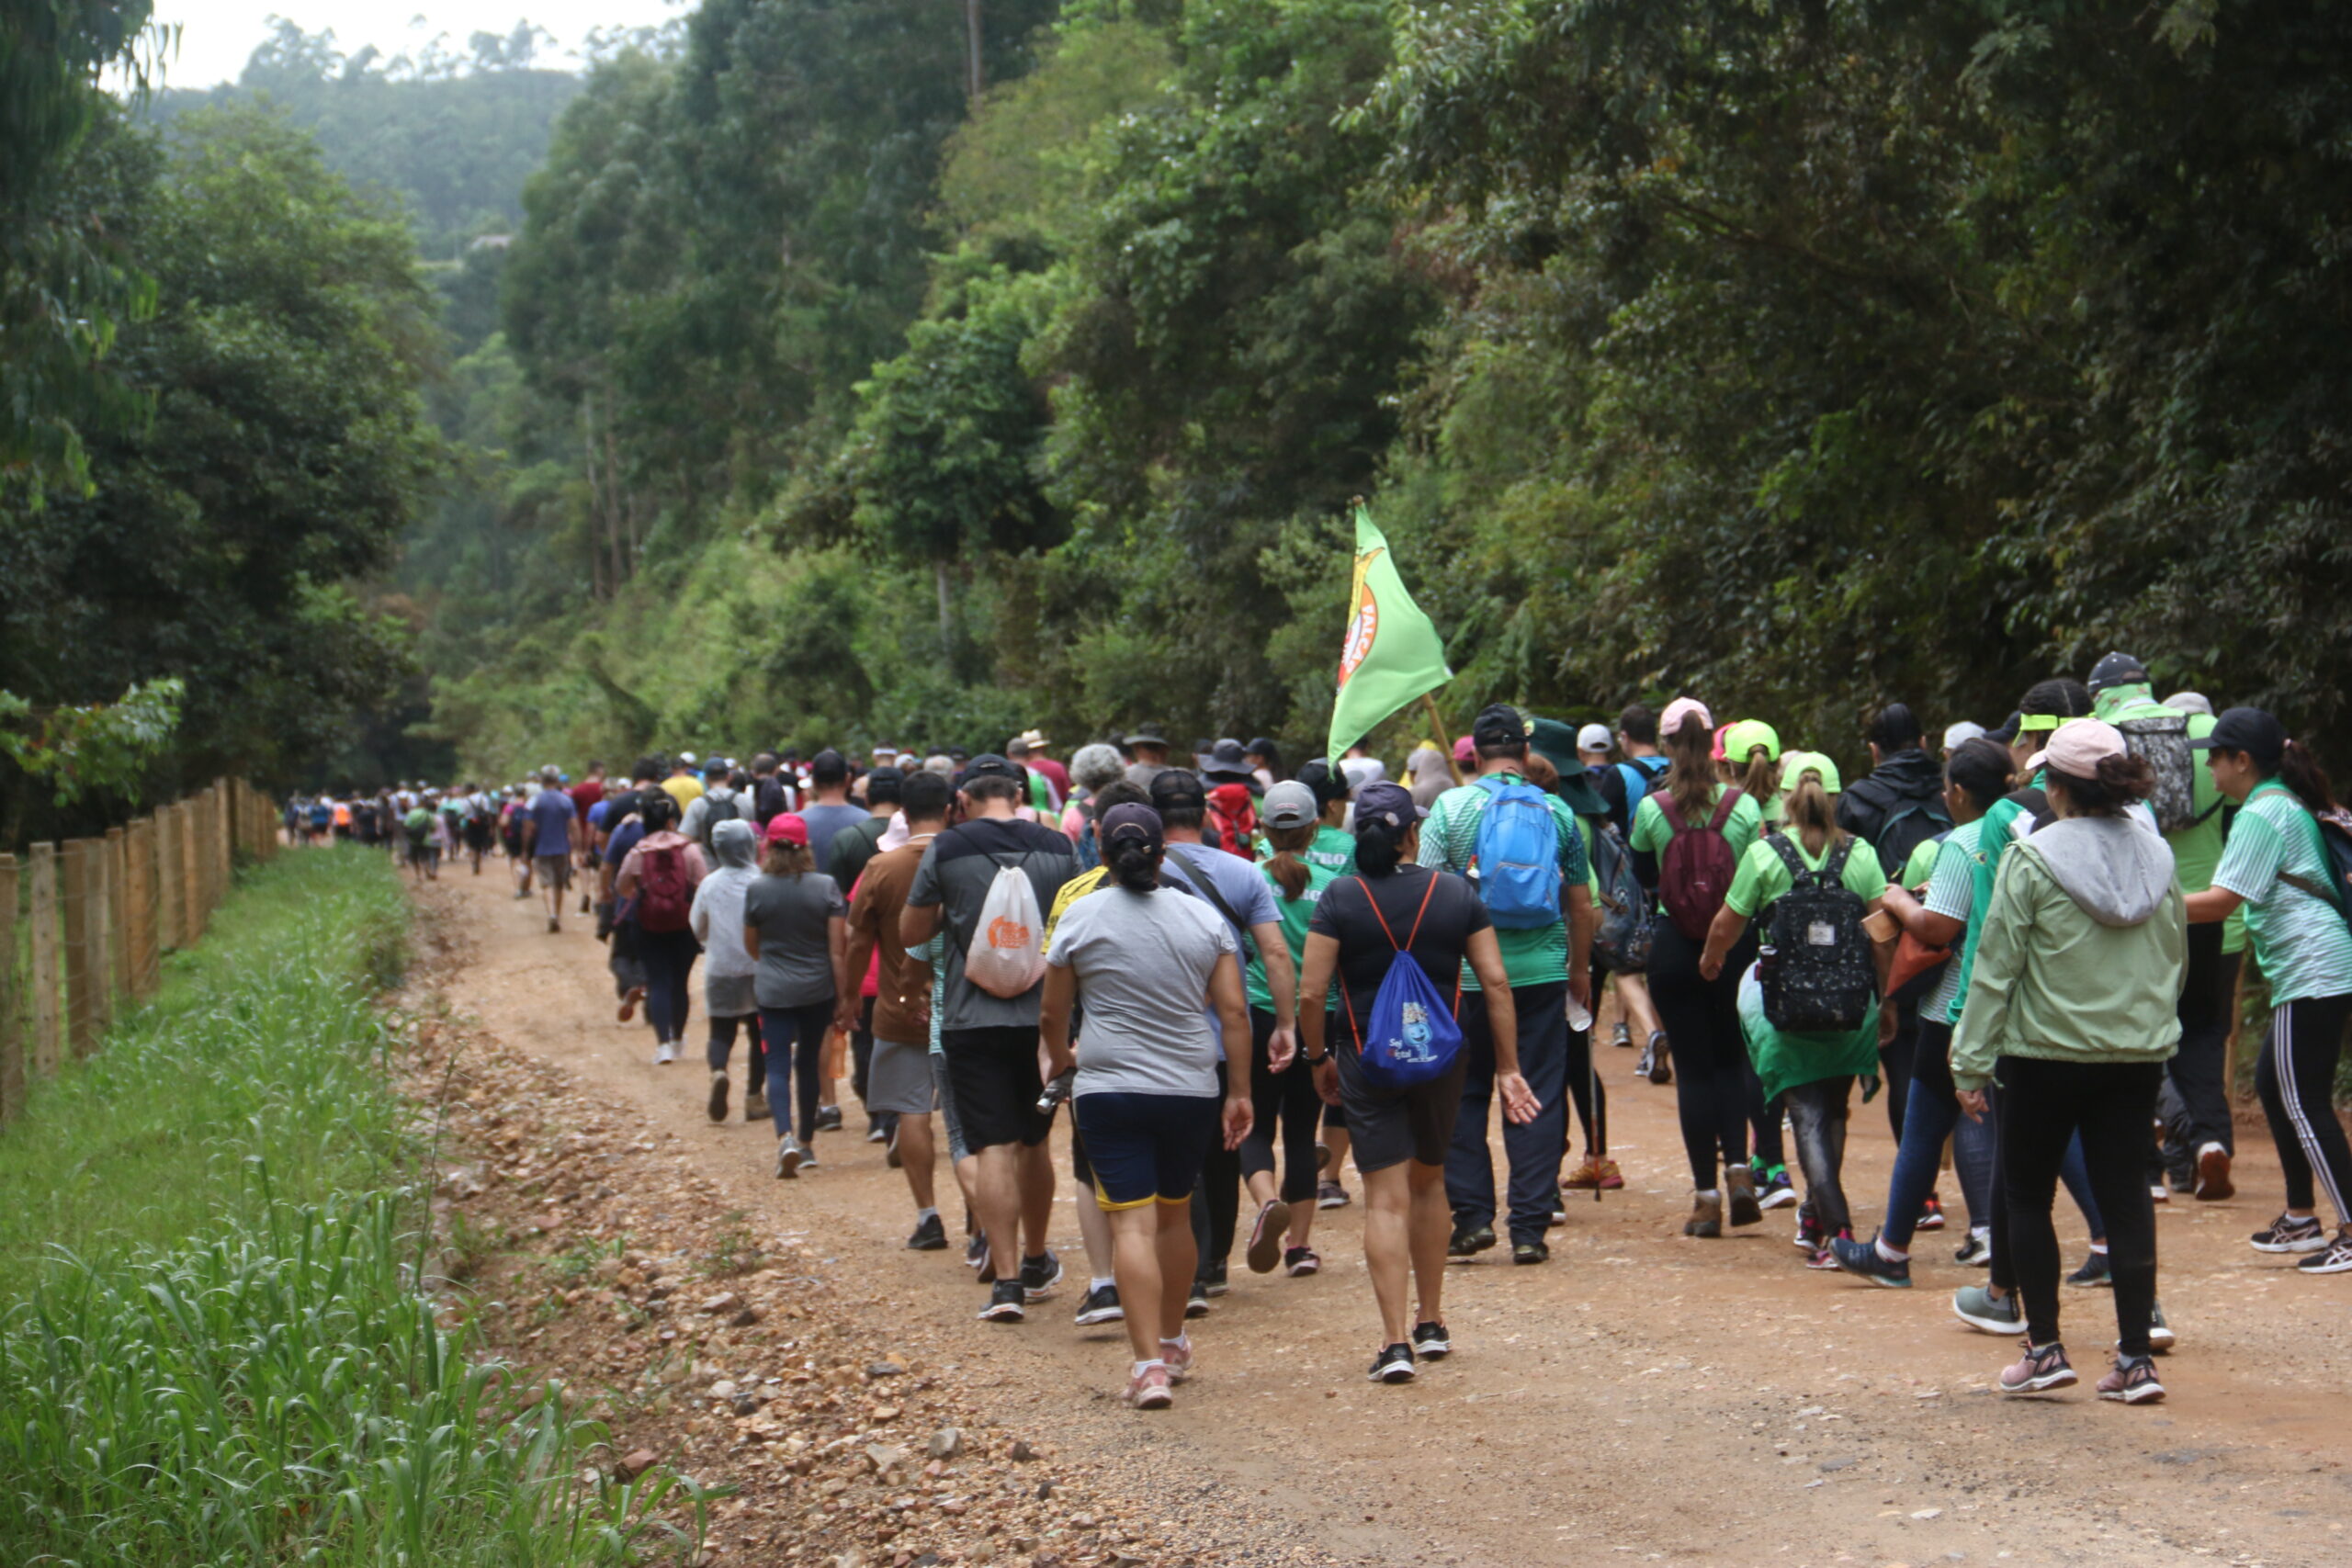 Caminhada na Natureza reúne mais de 700 participantes em Ponta Grossa